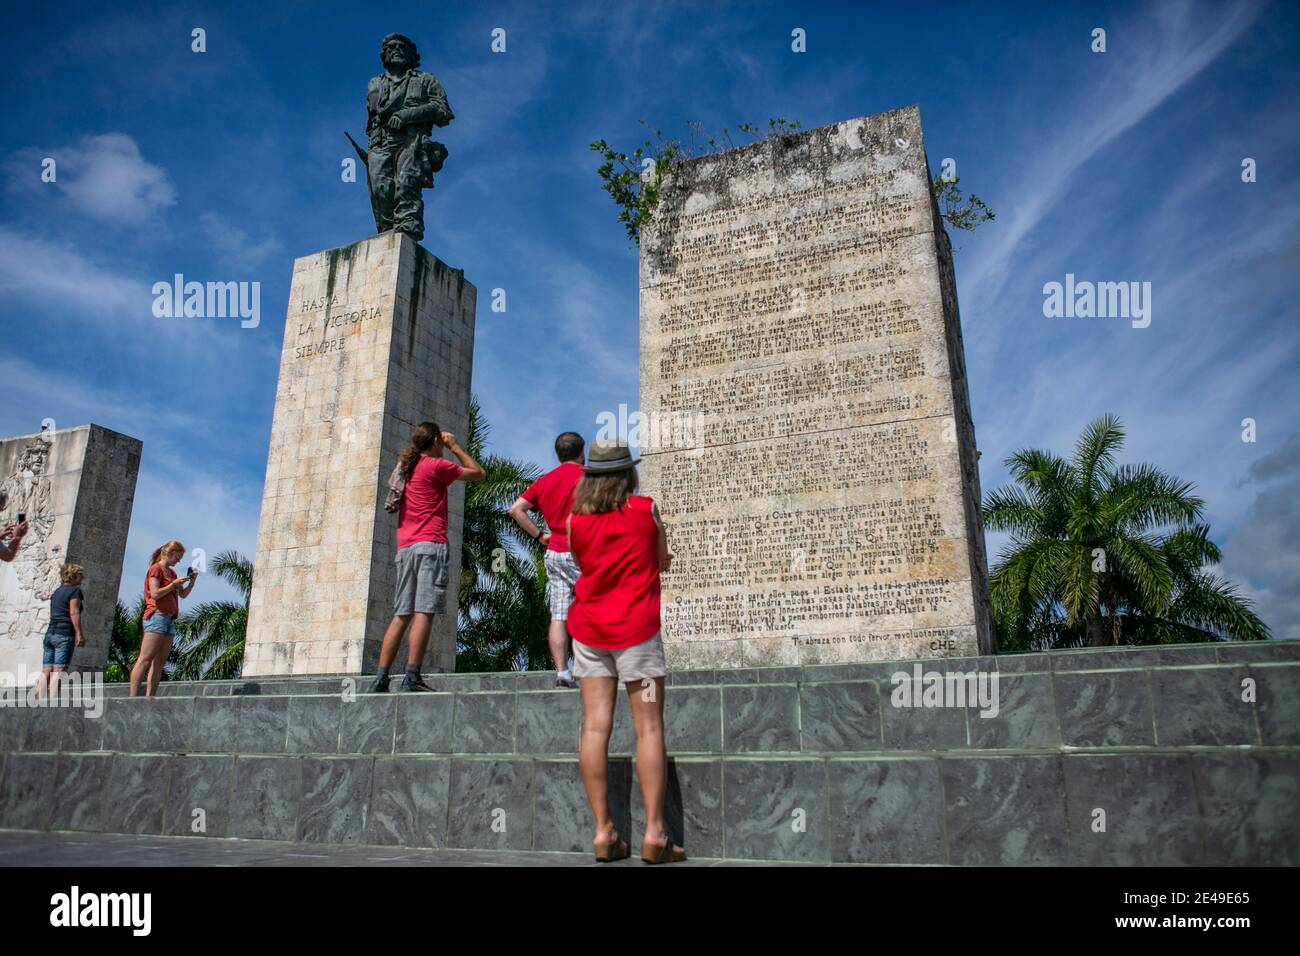 Monumento al Che Guevara en la ciudad de Santa Clara, Cuba Foto de stock